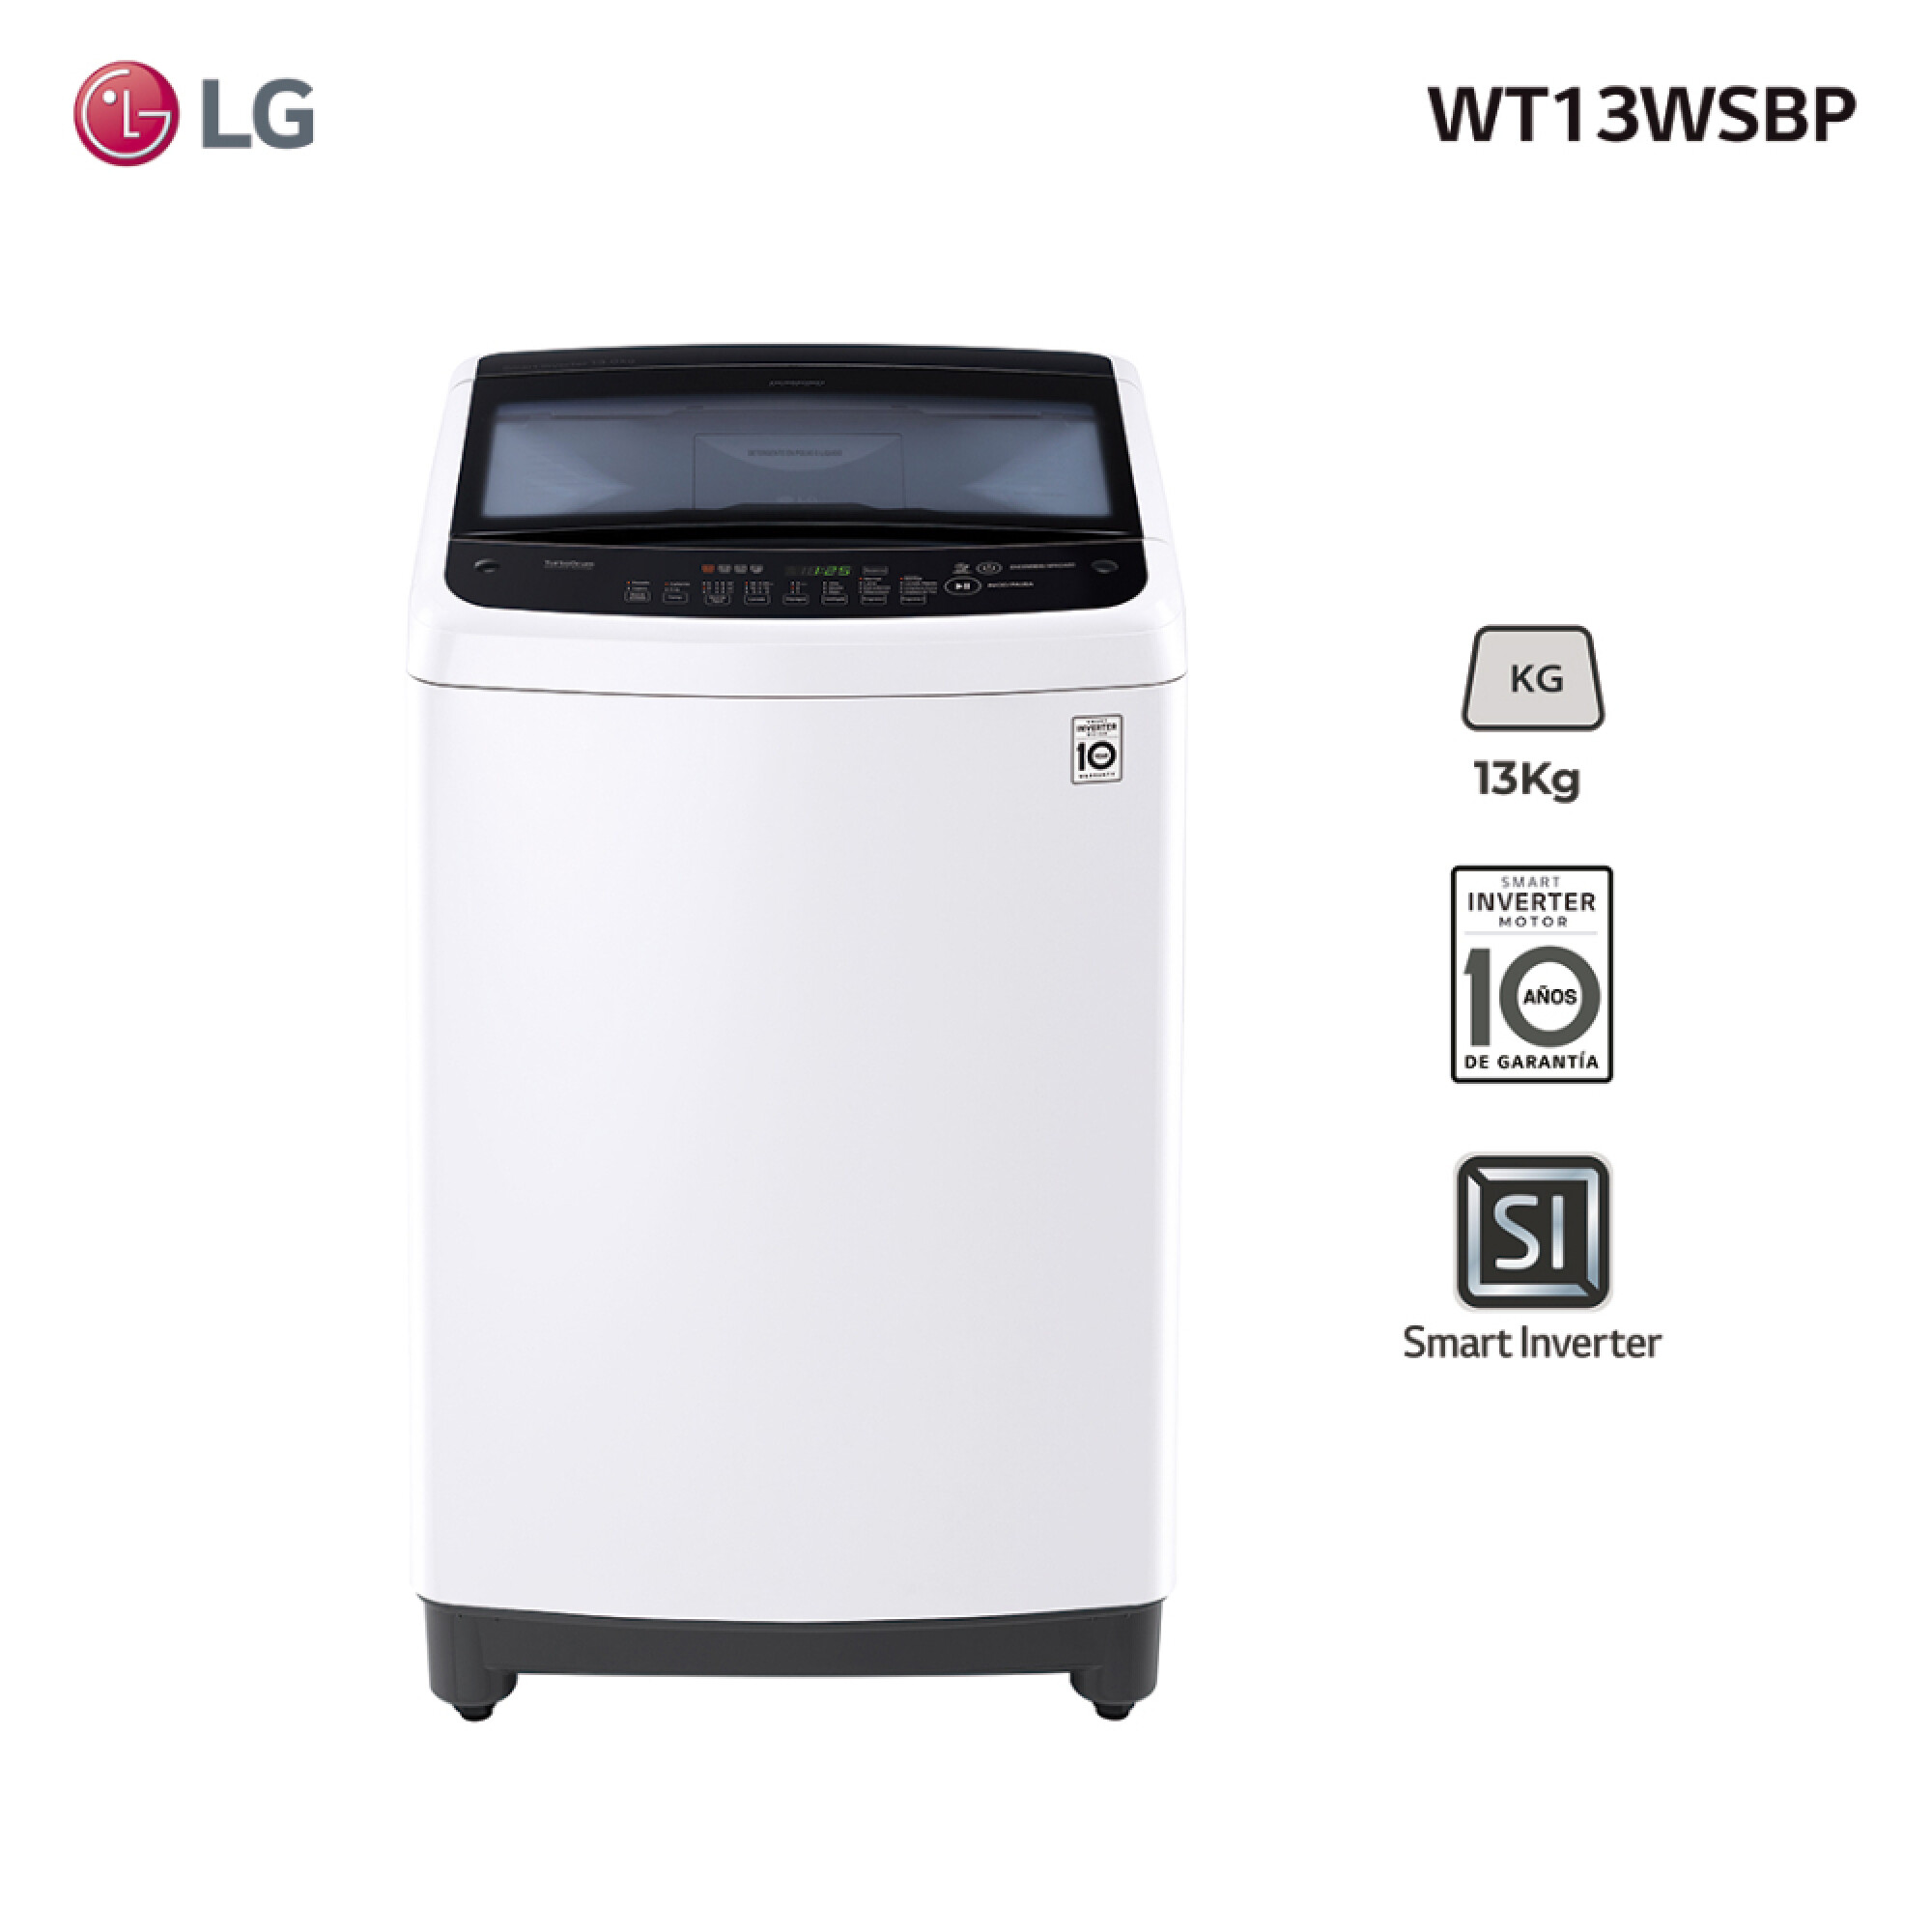 Por qué te conviene una lavadora de carga superior LG con motor Smart  Inverter? 